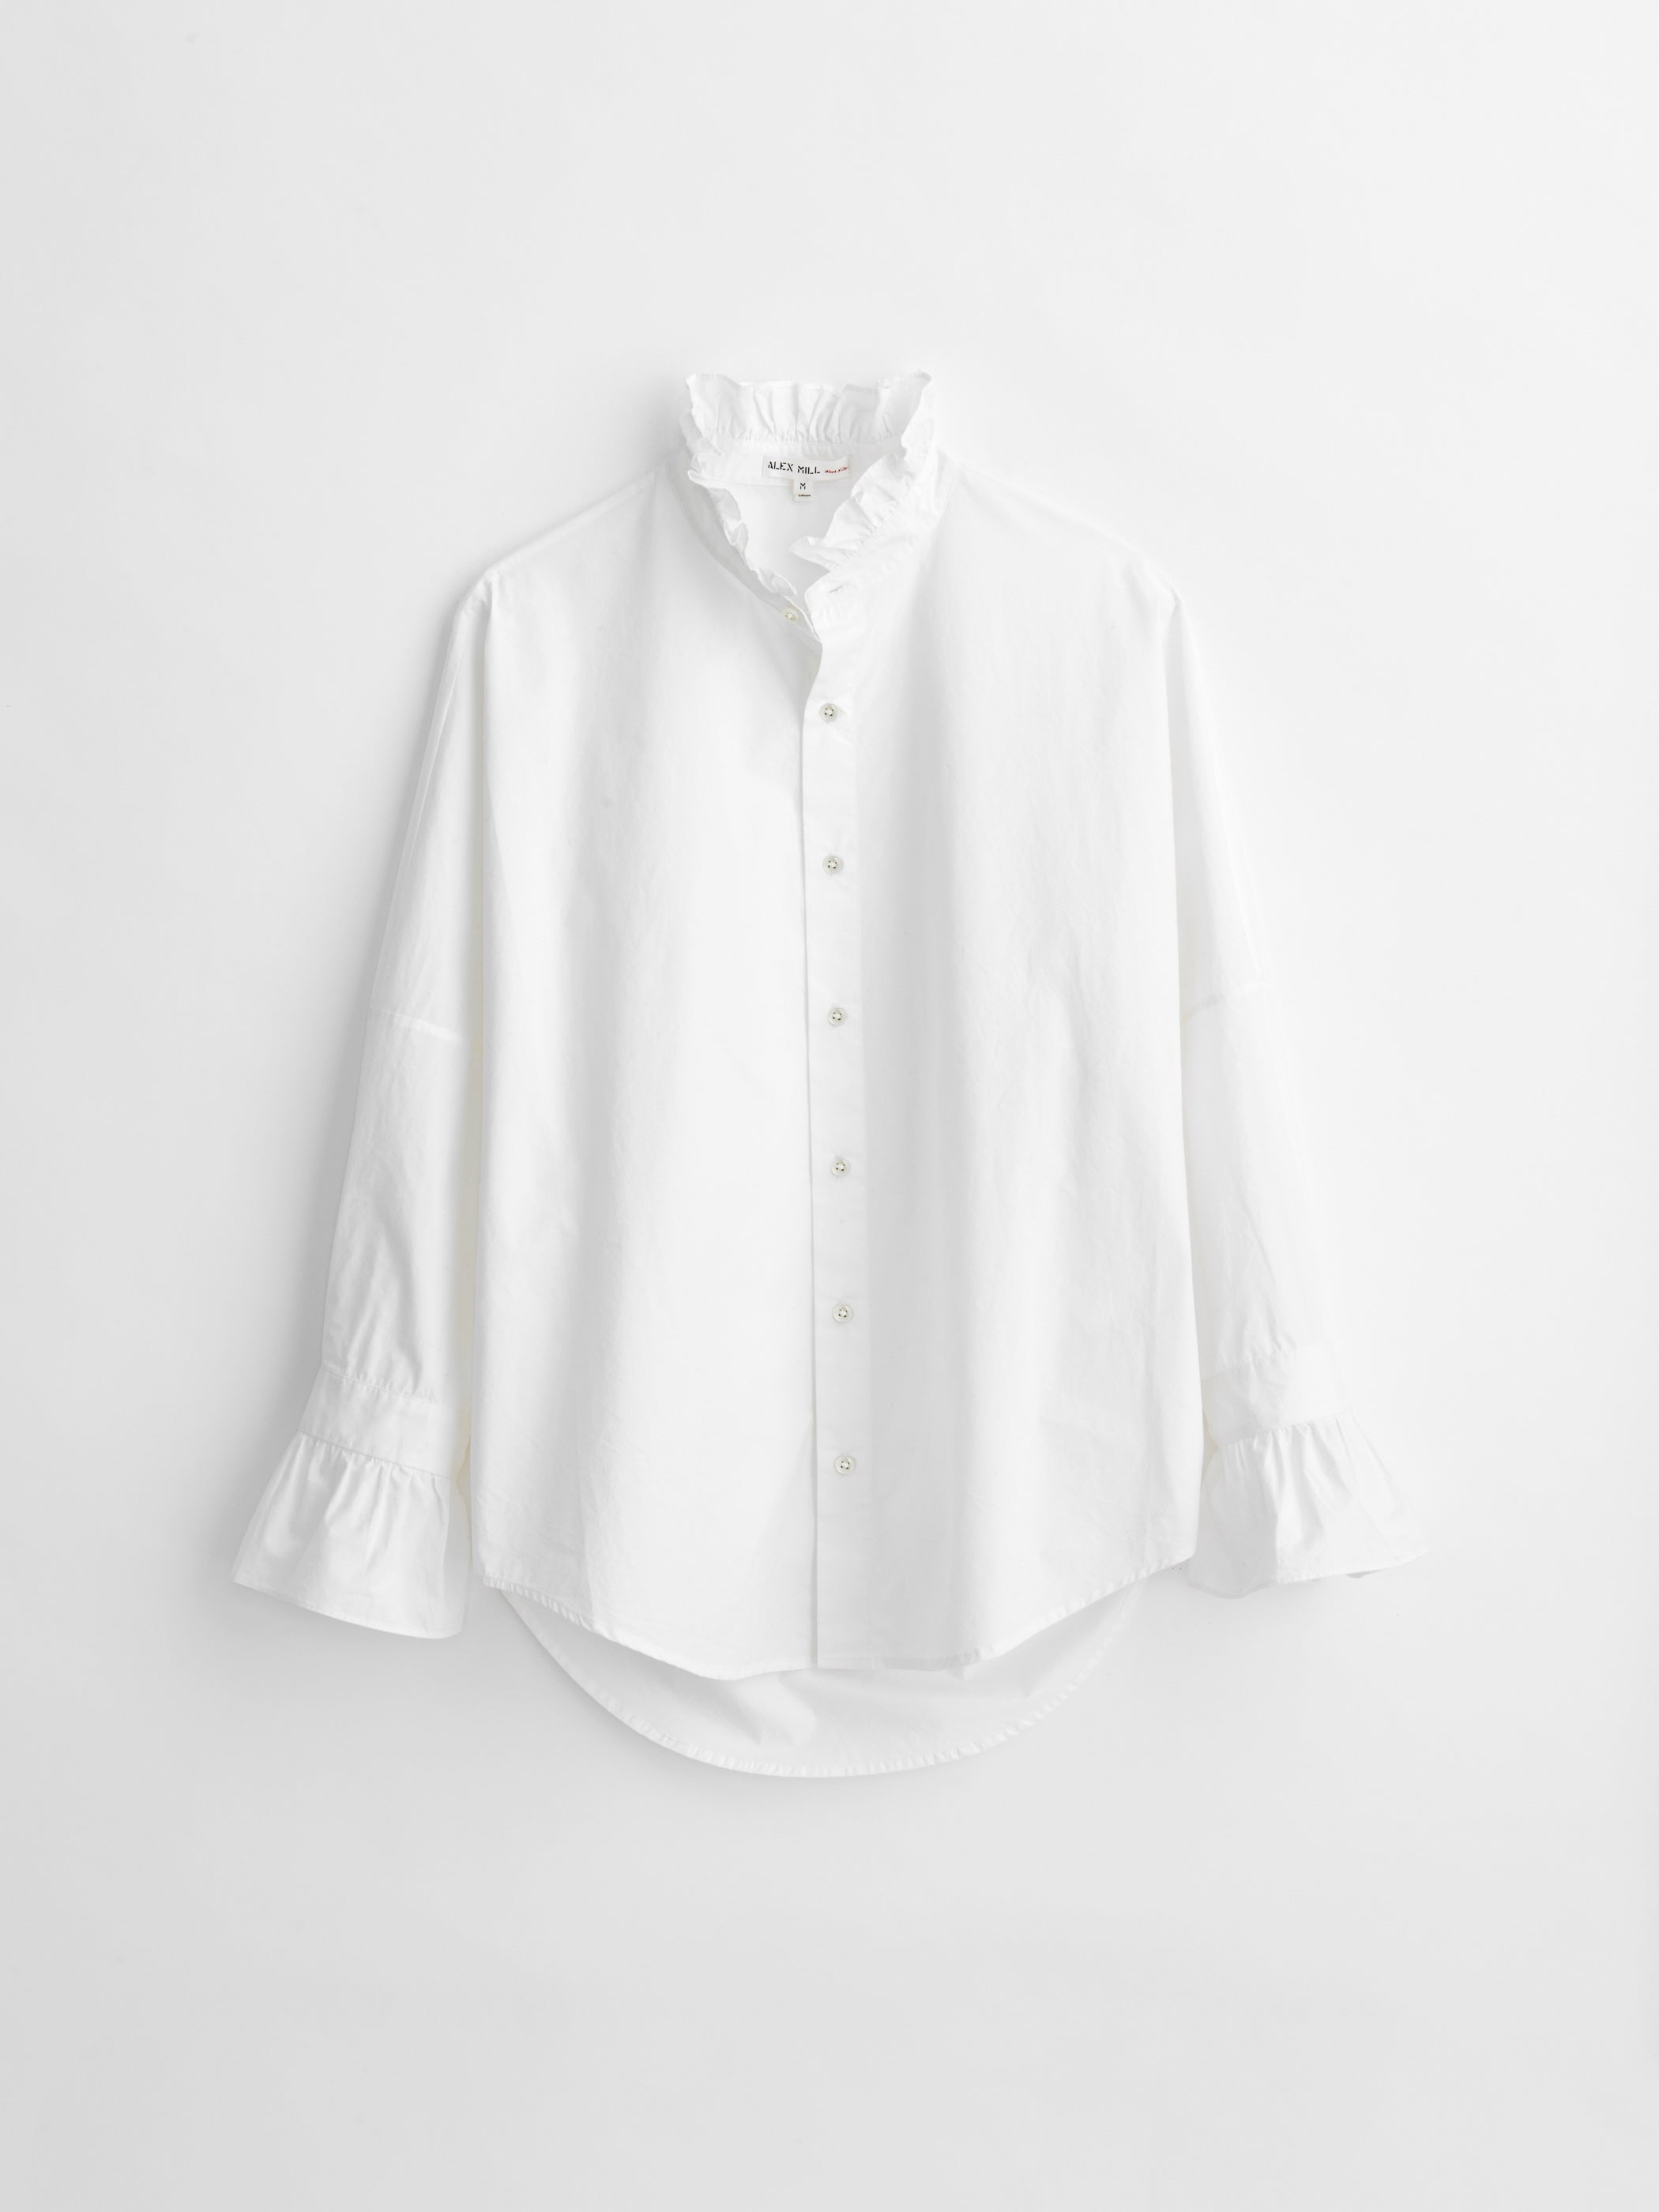 Cotton Poplin Self-Tie Shirt - Ready-to-Wear 1AAWI4